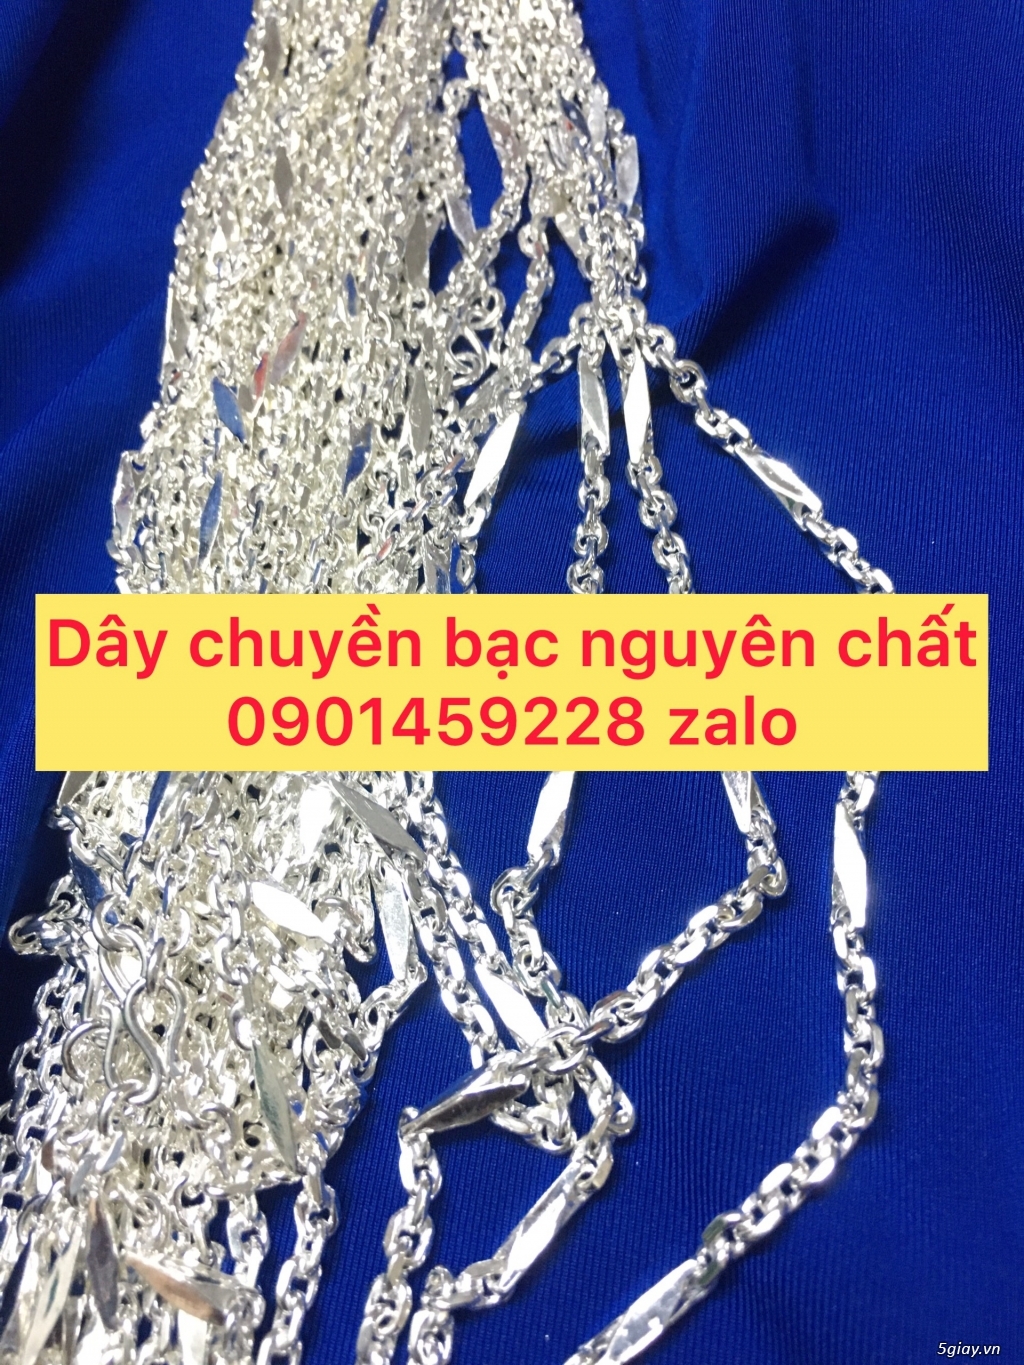 day chuyen bac nguyen chat - 4